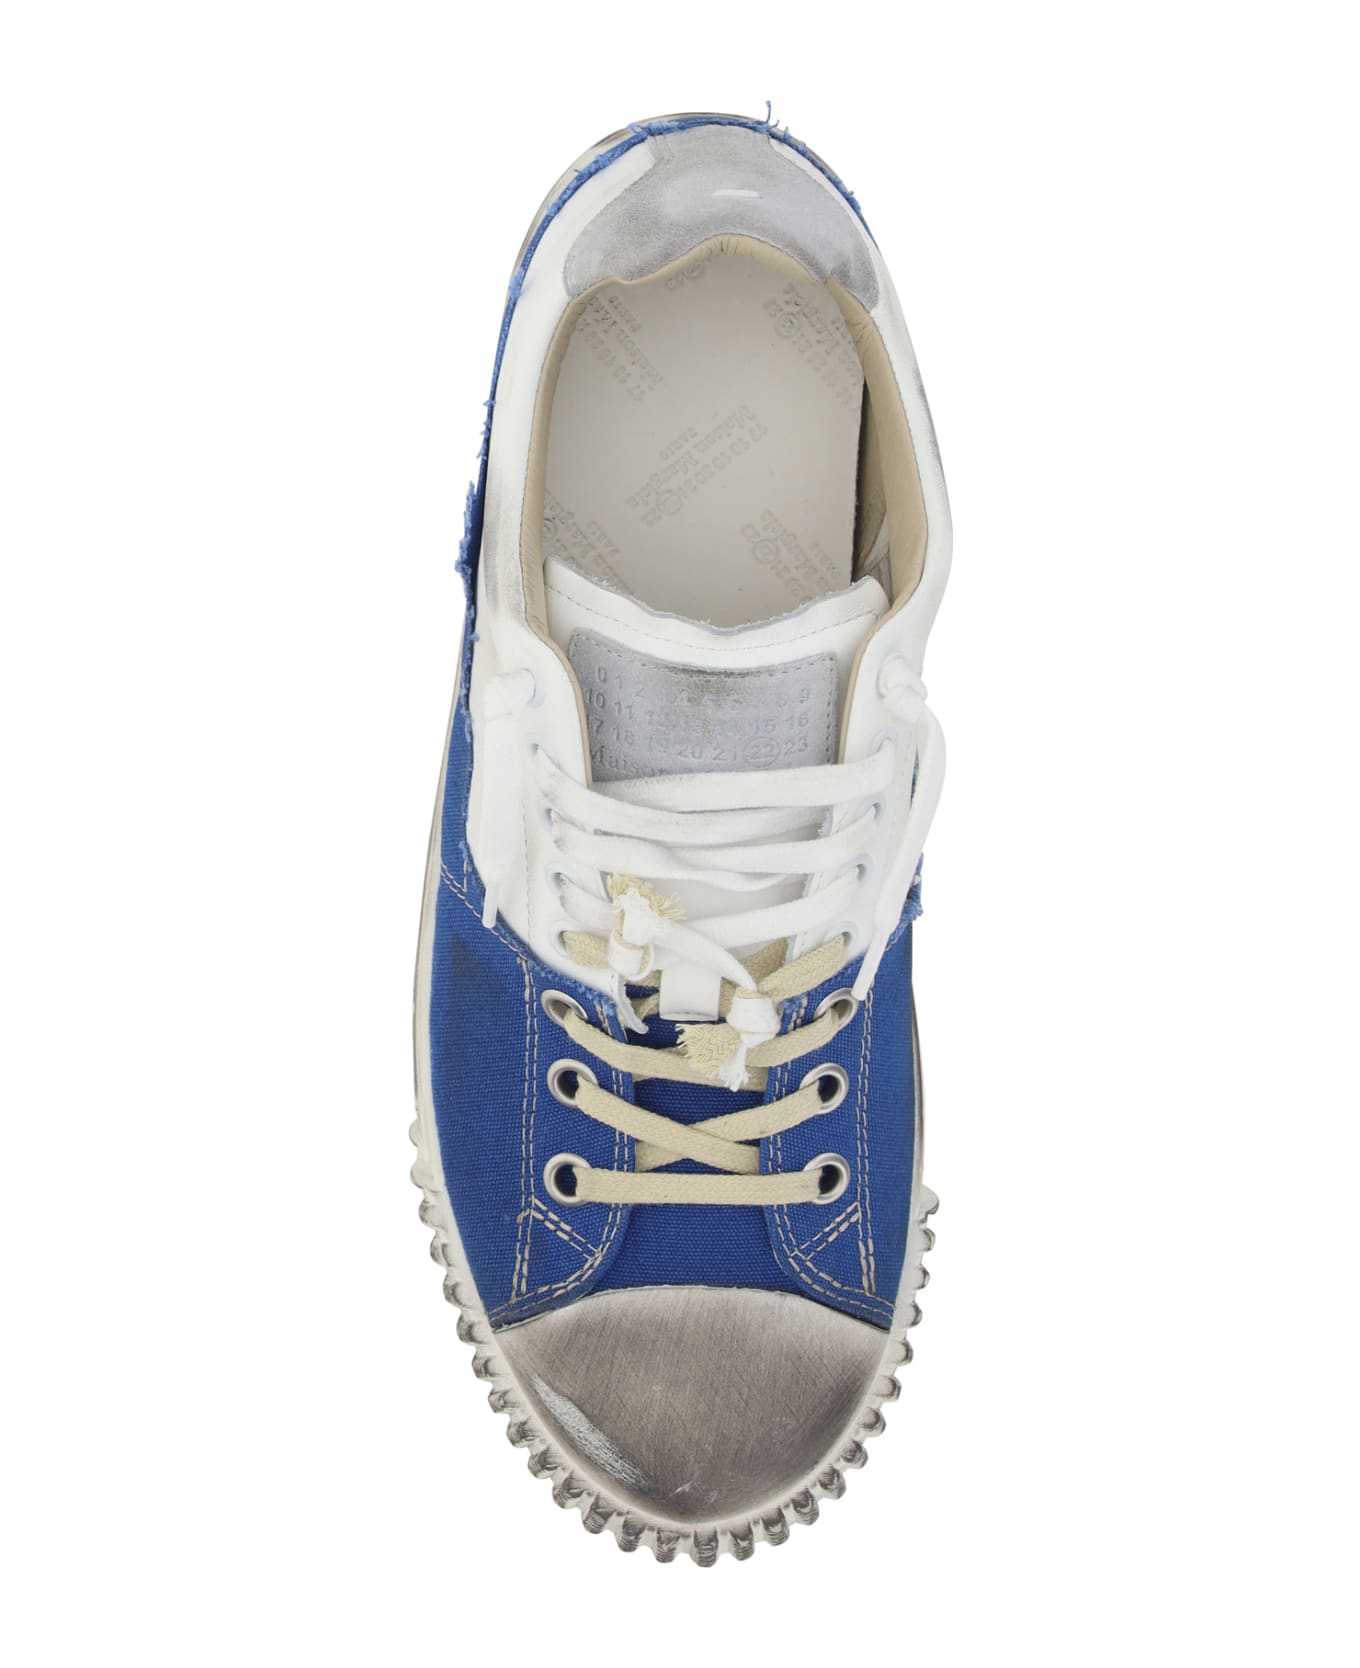 Maison Margiela New Evolution Sneakers - Blue/white スニーカー